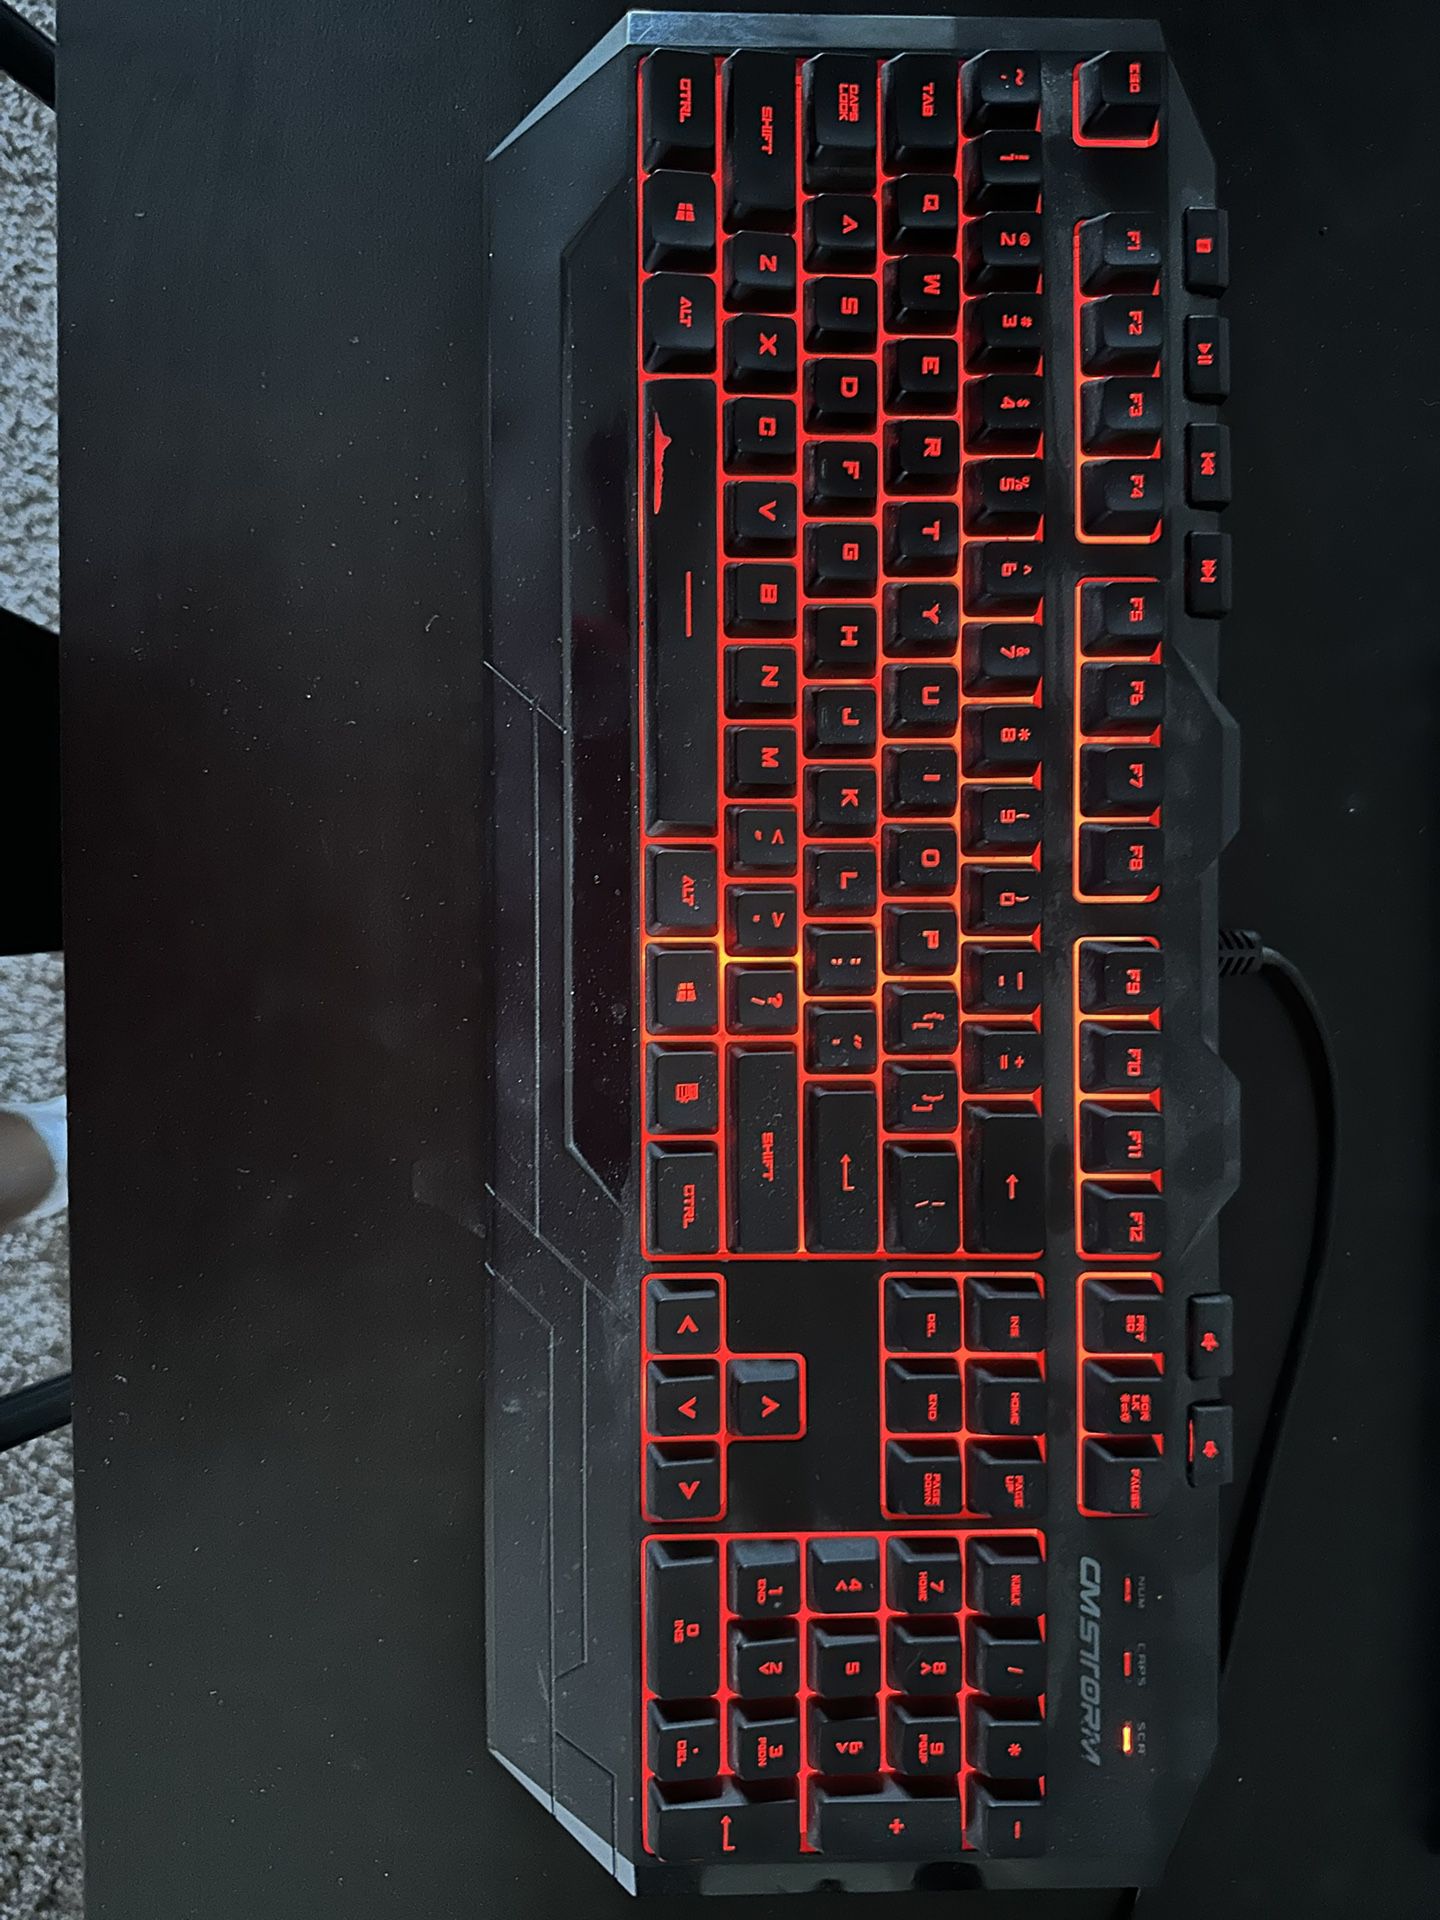 Sick Gaming Keyboard 